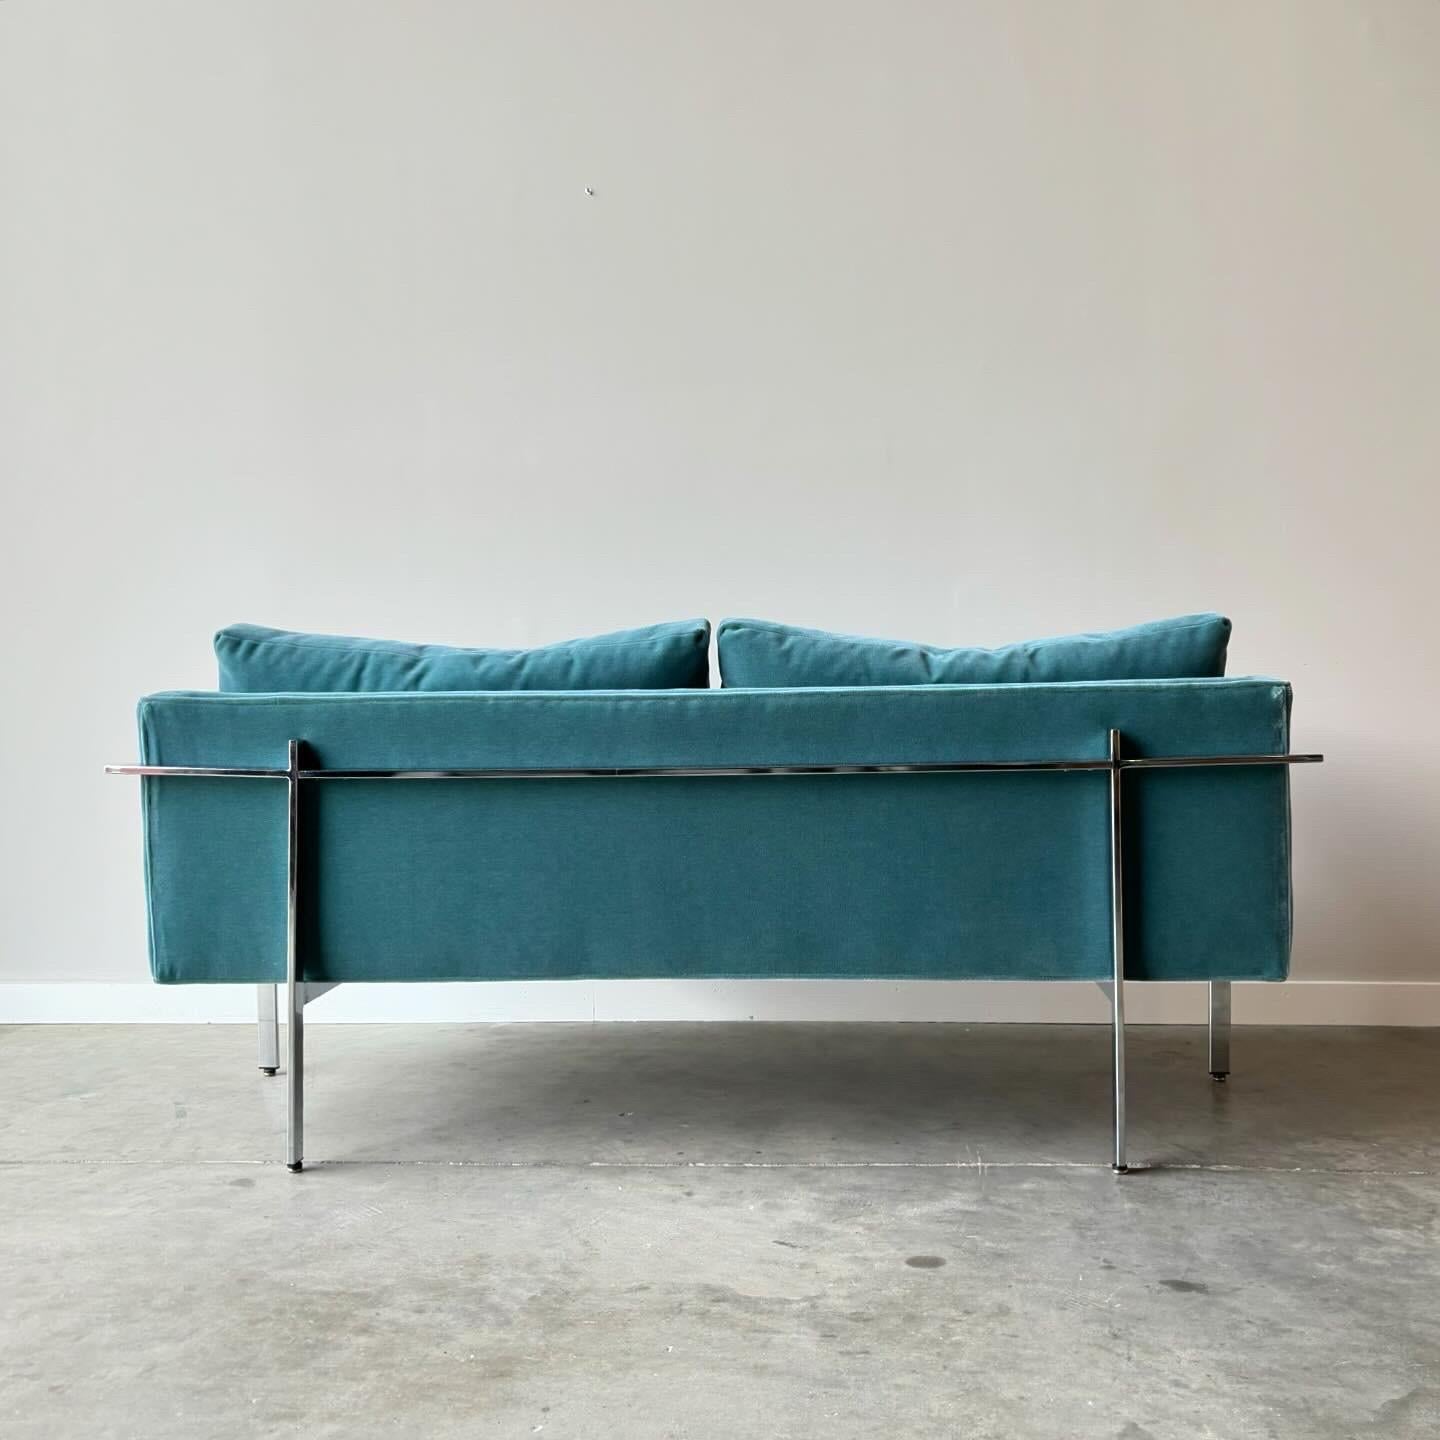 Das 1968 von Milo Baughman entworfene Drop In Sofa ist ein zeitloses, klassisch-modernes Sofa, das aus jedem Blickwinkel beeindruckend gut aussieht. 
Polierte Chromleiste, die um das Sofa herum und an den Beinen entlang verläuft. Neu gepolstert mit